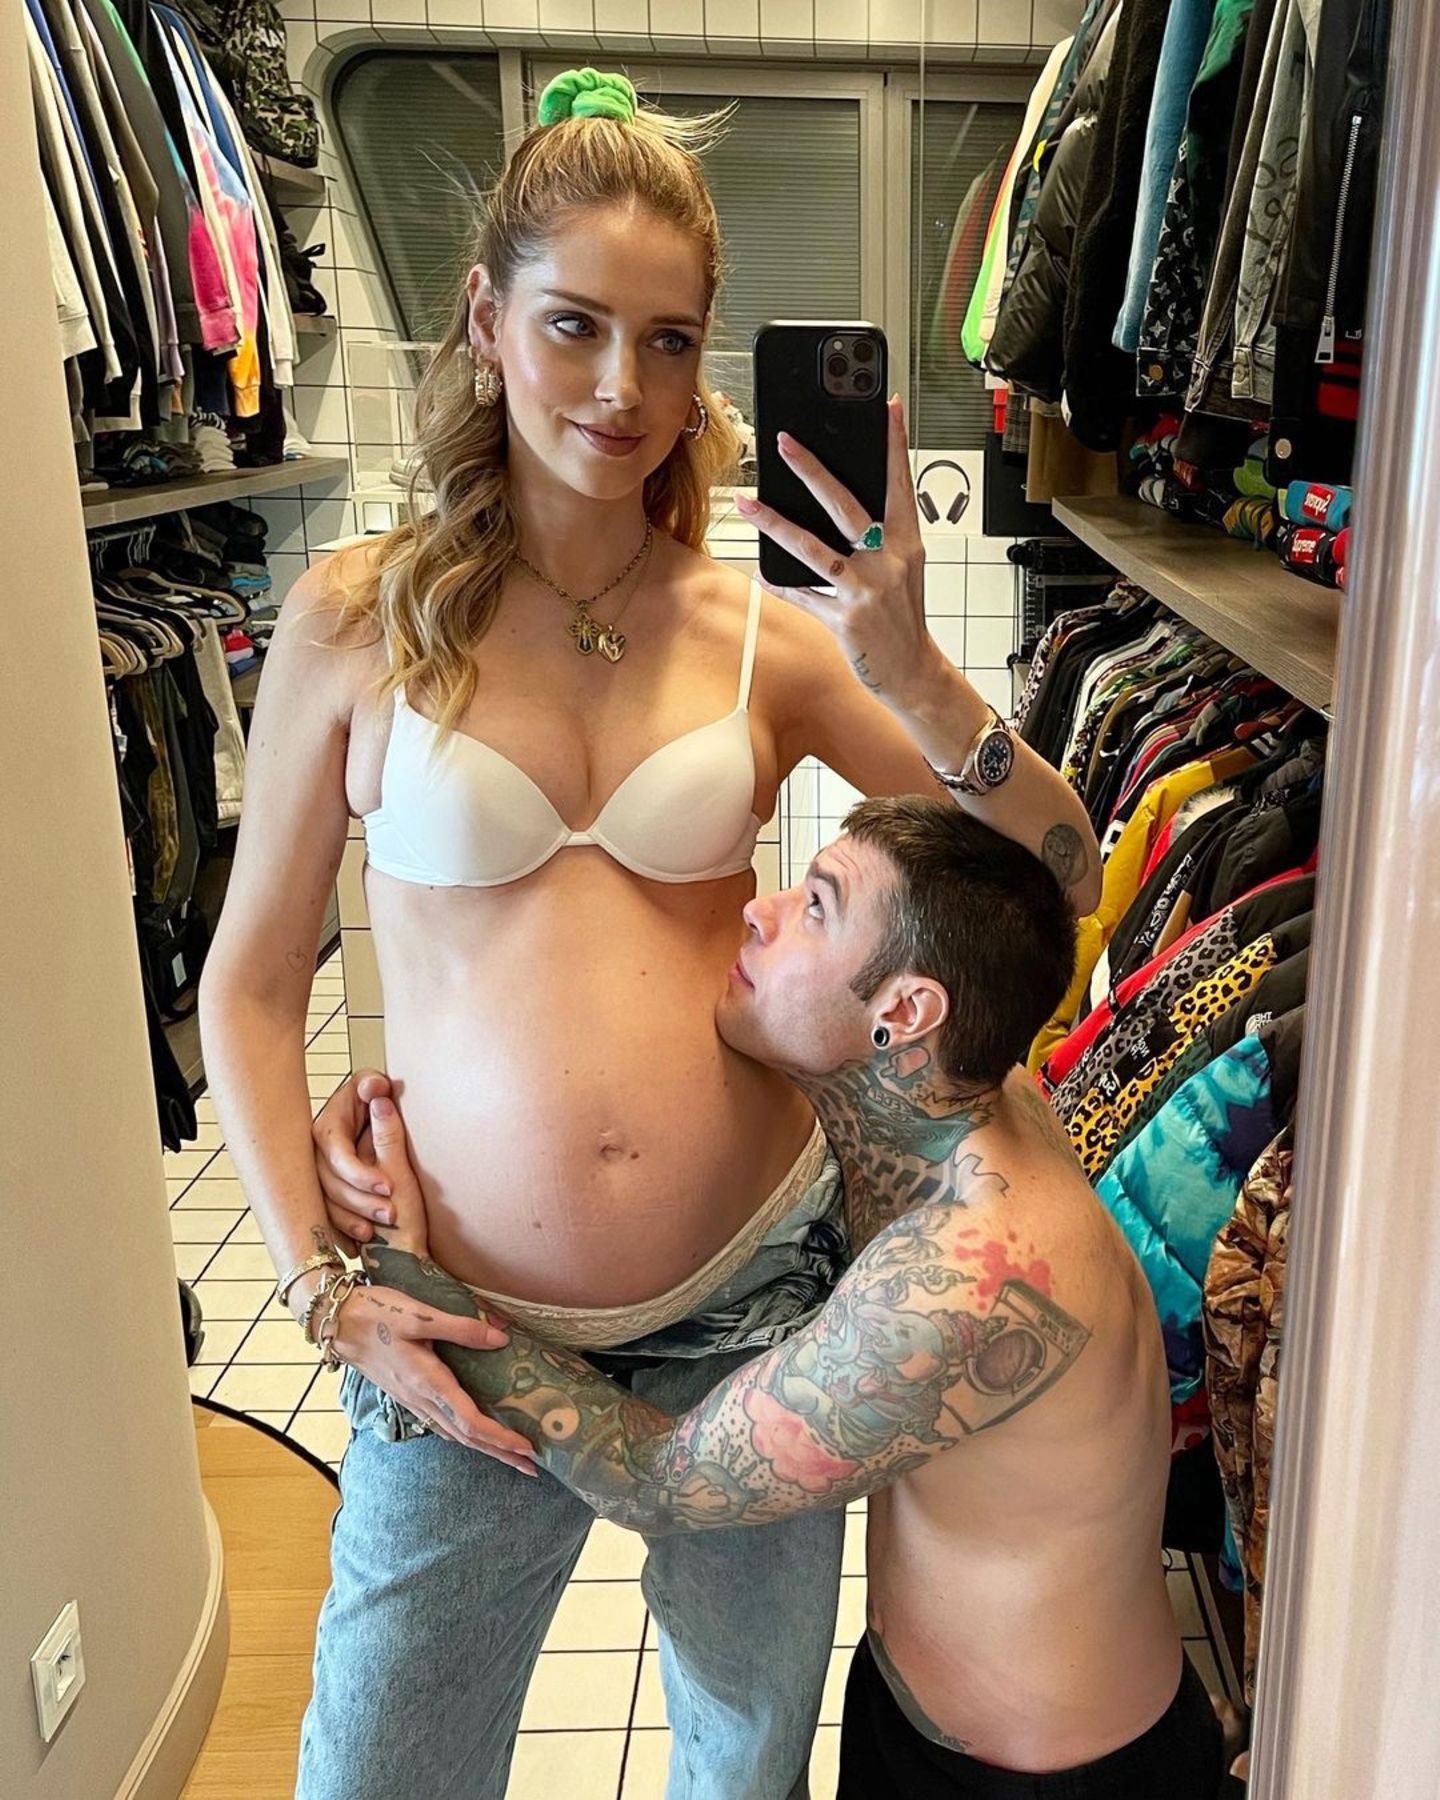 Bloggerin Chiara Ferragni freut sich auf ihr zweites Baby. Der werdende Papa Fedez findet die kleine Kugel jedenfalls auch zum Knutschen.